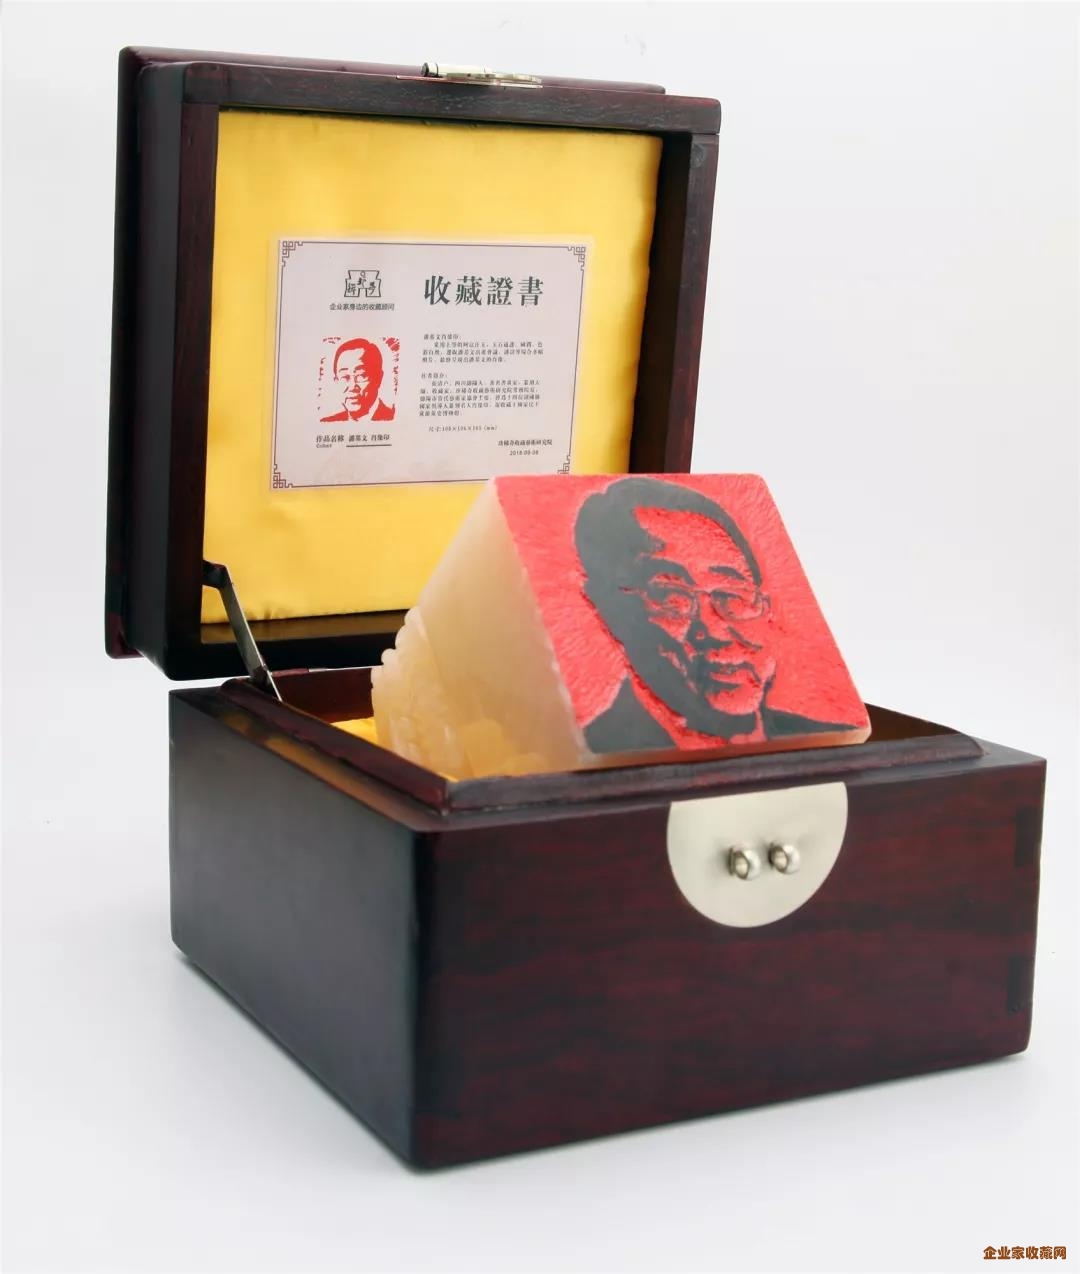 【民企盛典】珍稀奇董事长郭晓林赠予潘基文、龙永图金石肖像印